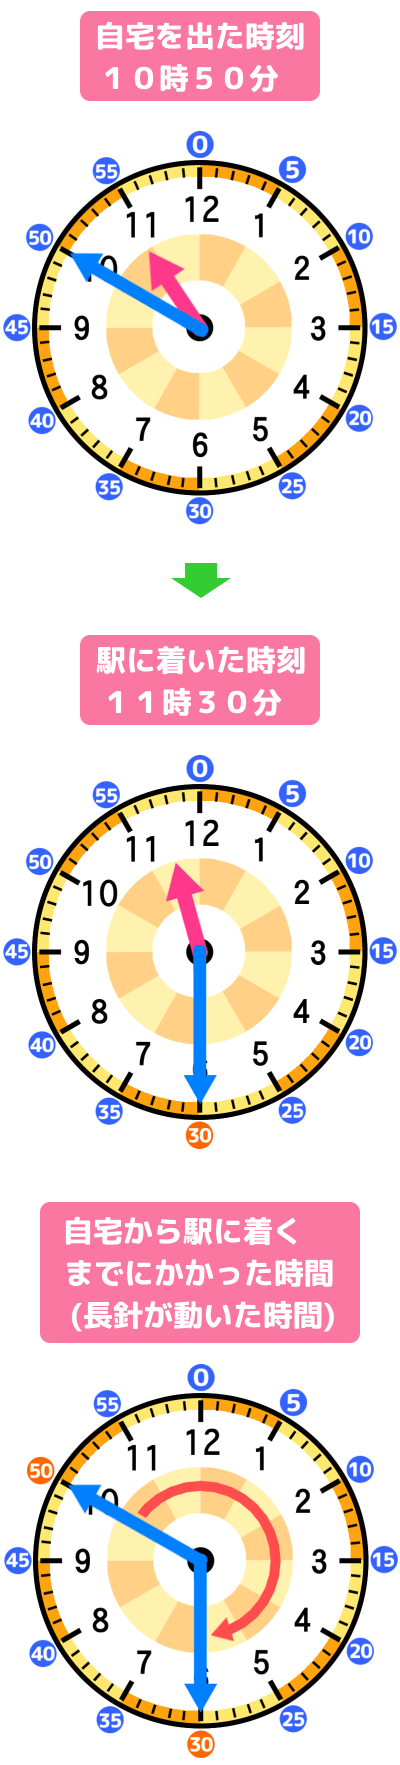 自宅から駅に着くまでにかかった時間(長針が動いた時間)を解説するアナログ時計の図